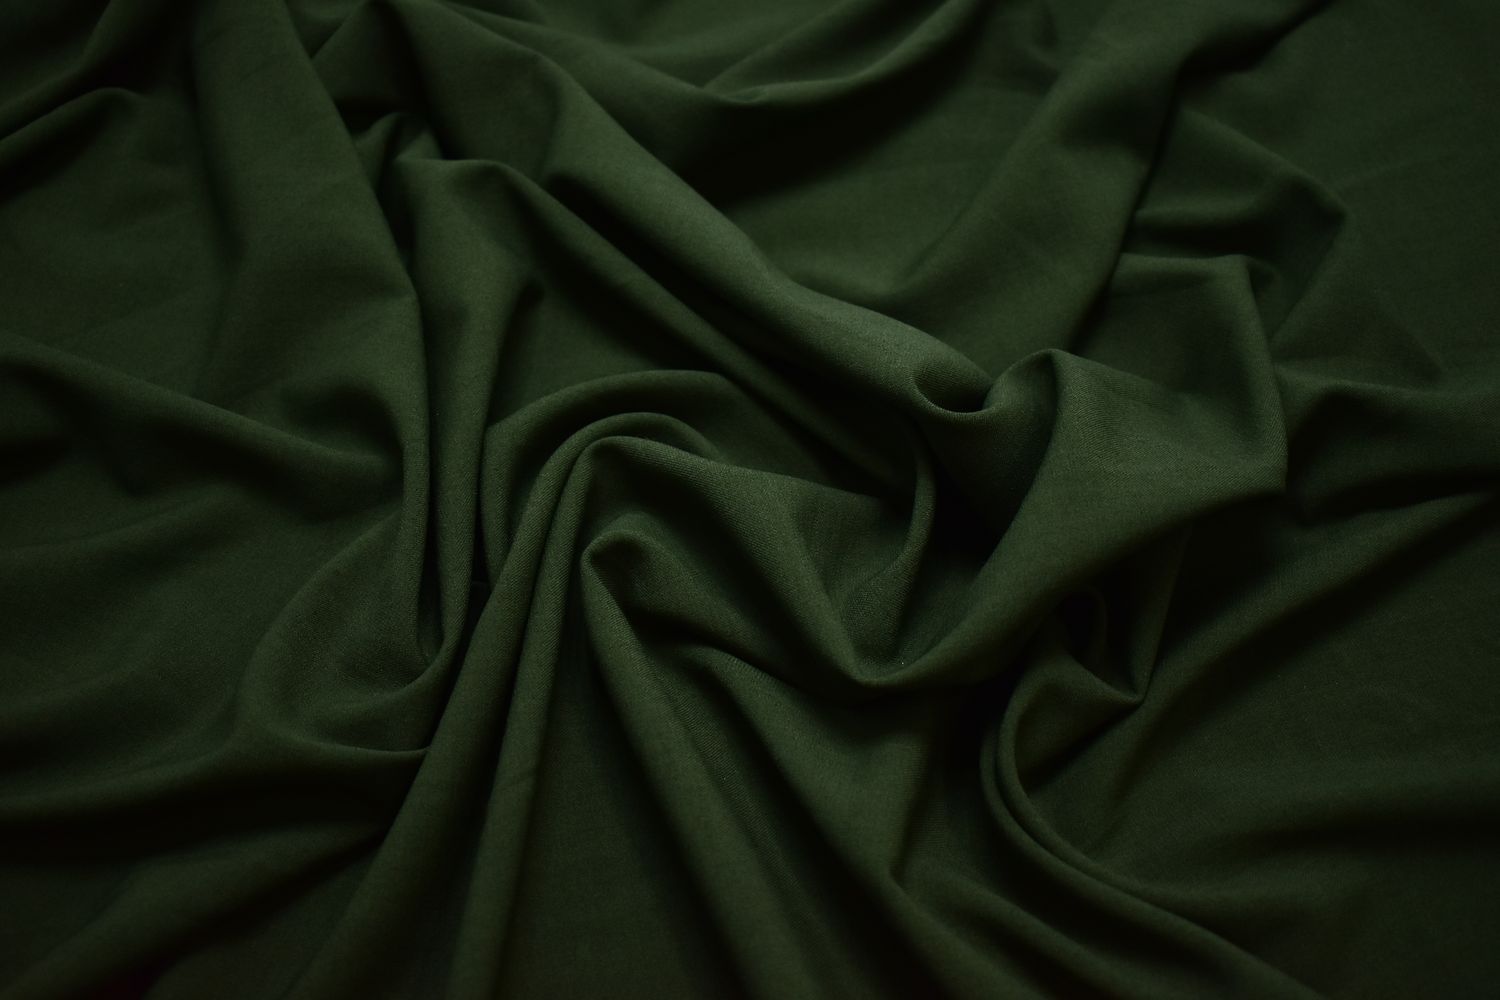 Костюмная зеленая ткань W-132446